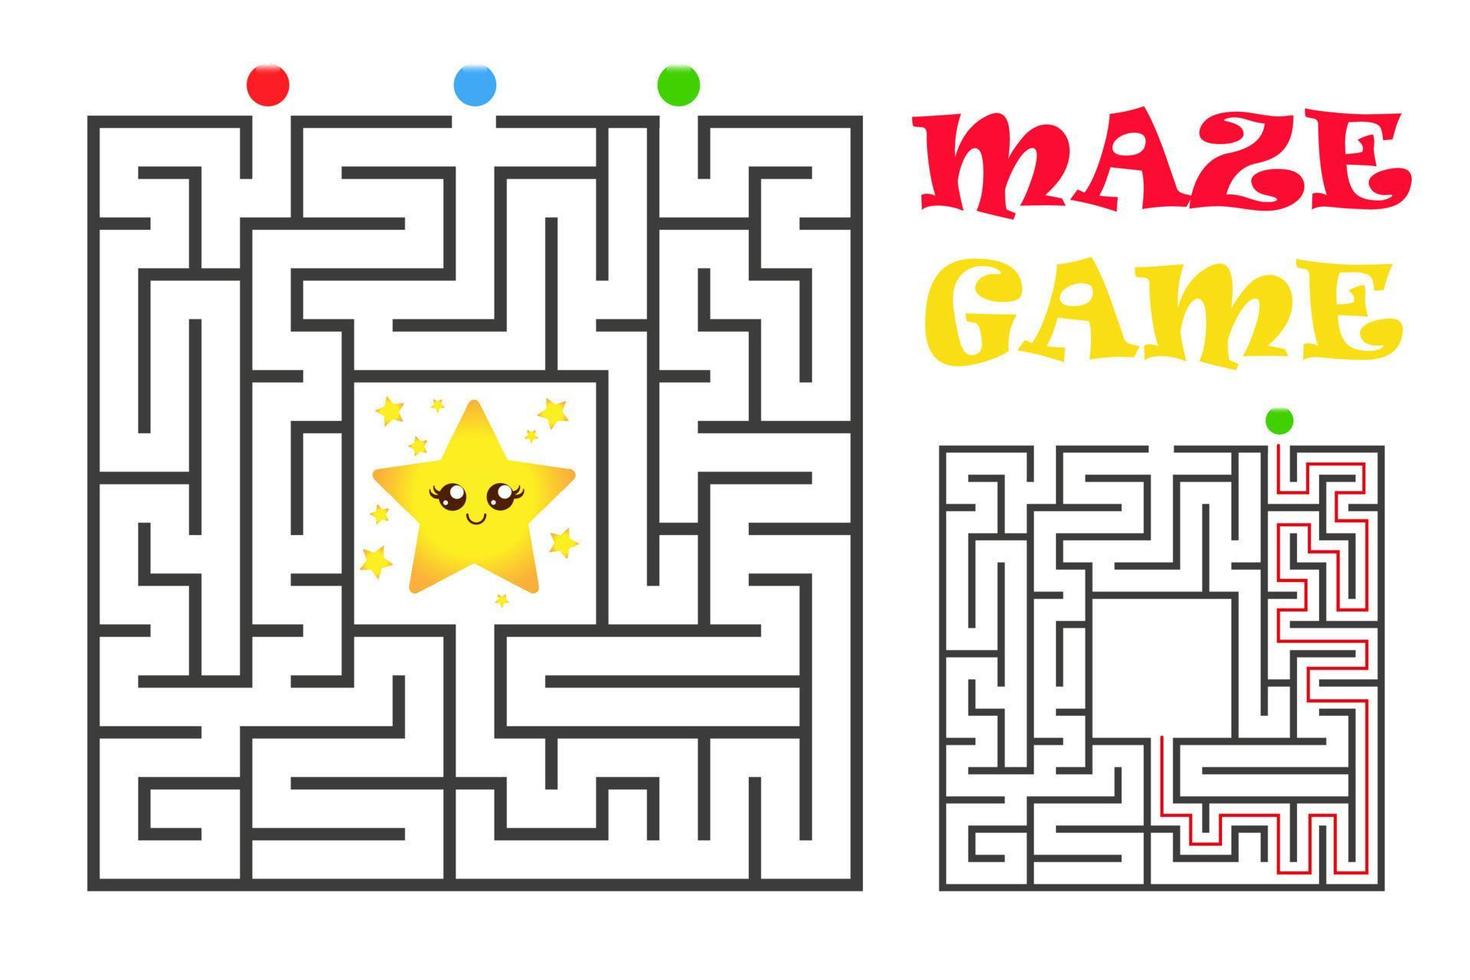 gioco labirinto quadrato per bambini. enigma logico con stella. quattro ingressi e una giusta strada da percorrere. illustrazione piatta vettoriale isolata su sfondo bianco.